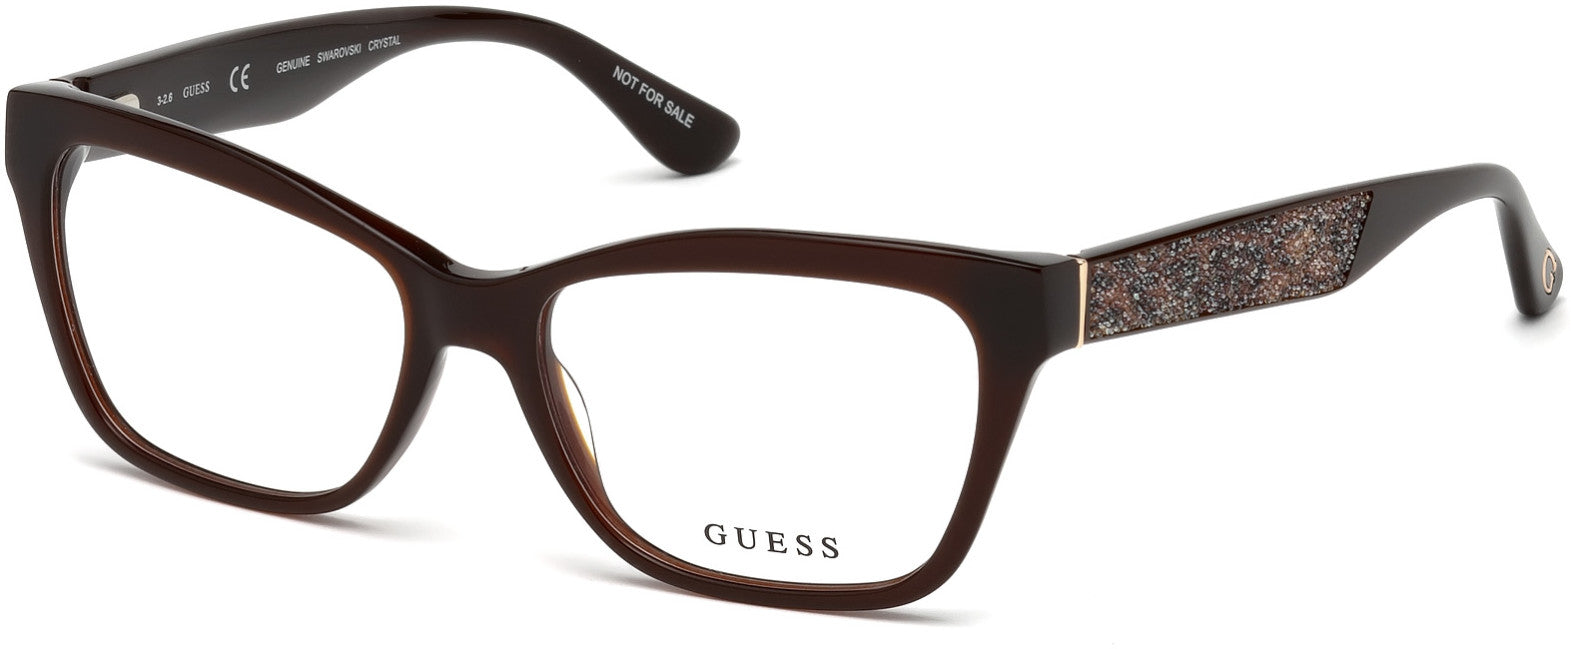 Guess GU2622 Geometric Eyeglasses 050-050 - Dark Brown/other